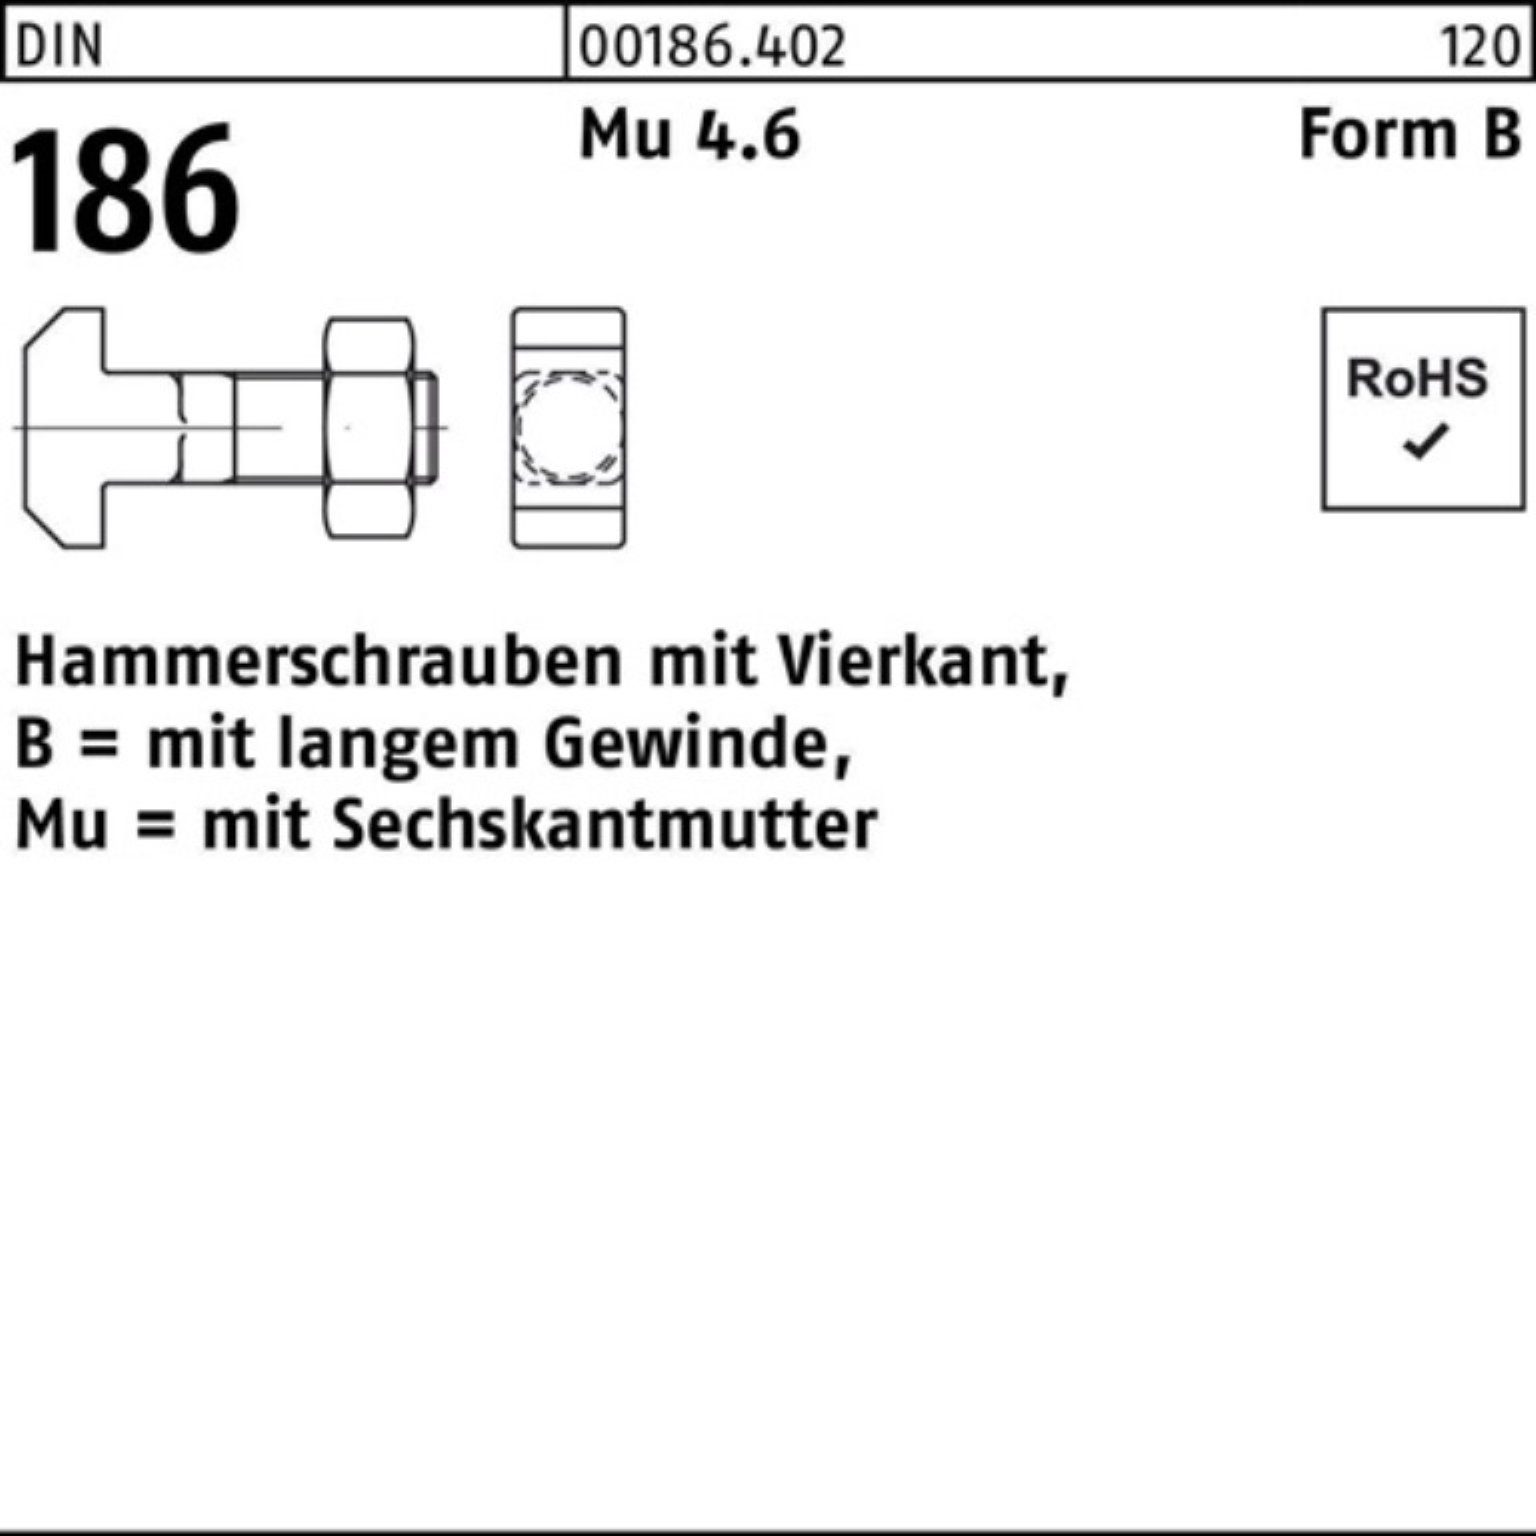 Reyher Schraube 100er Pack Hammerschraube 6-ktmutter 40 DIN 186 8x Vierkant FormB BM M